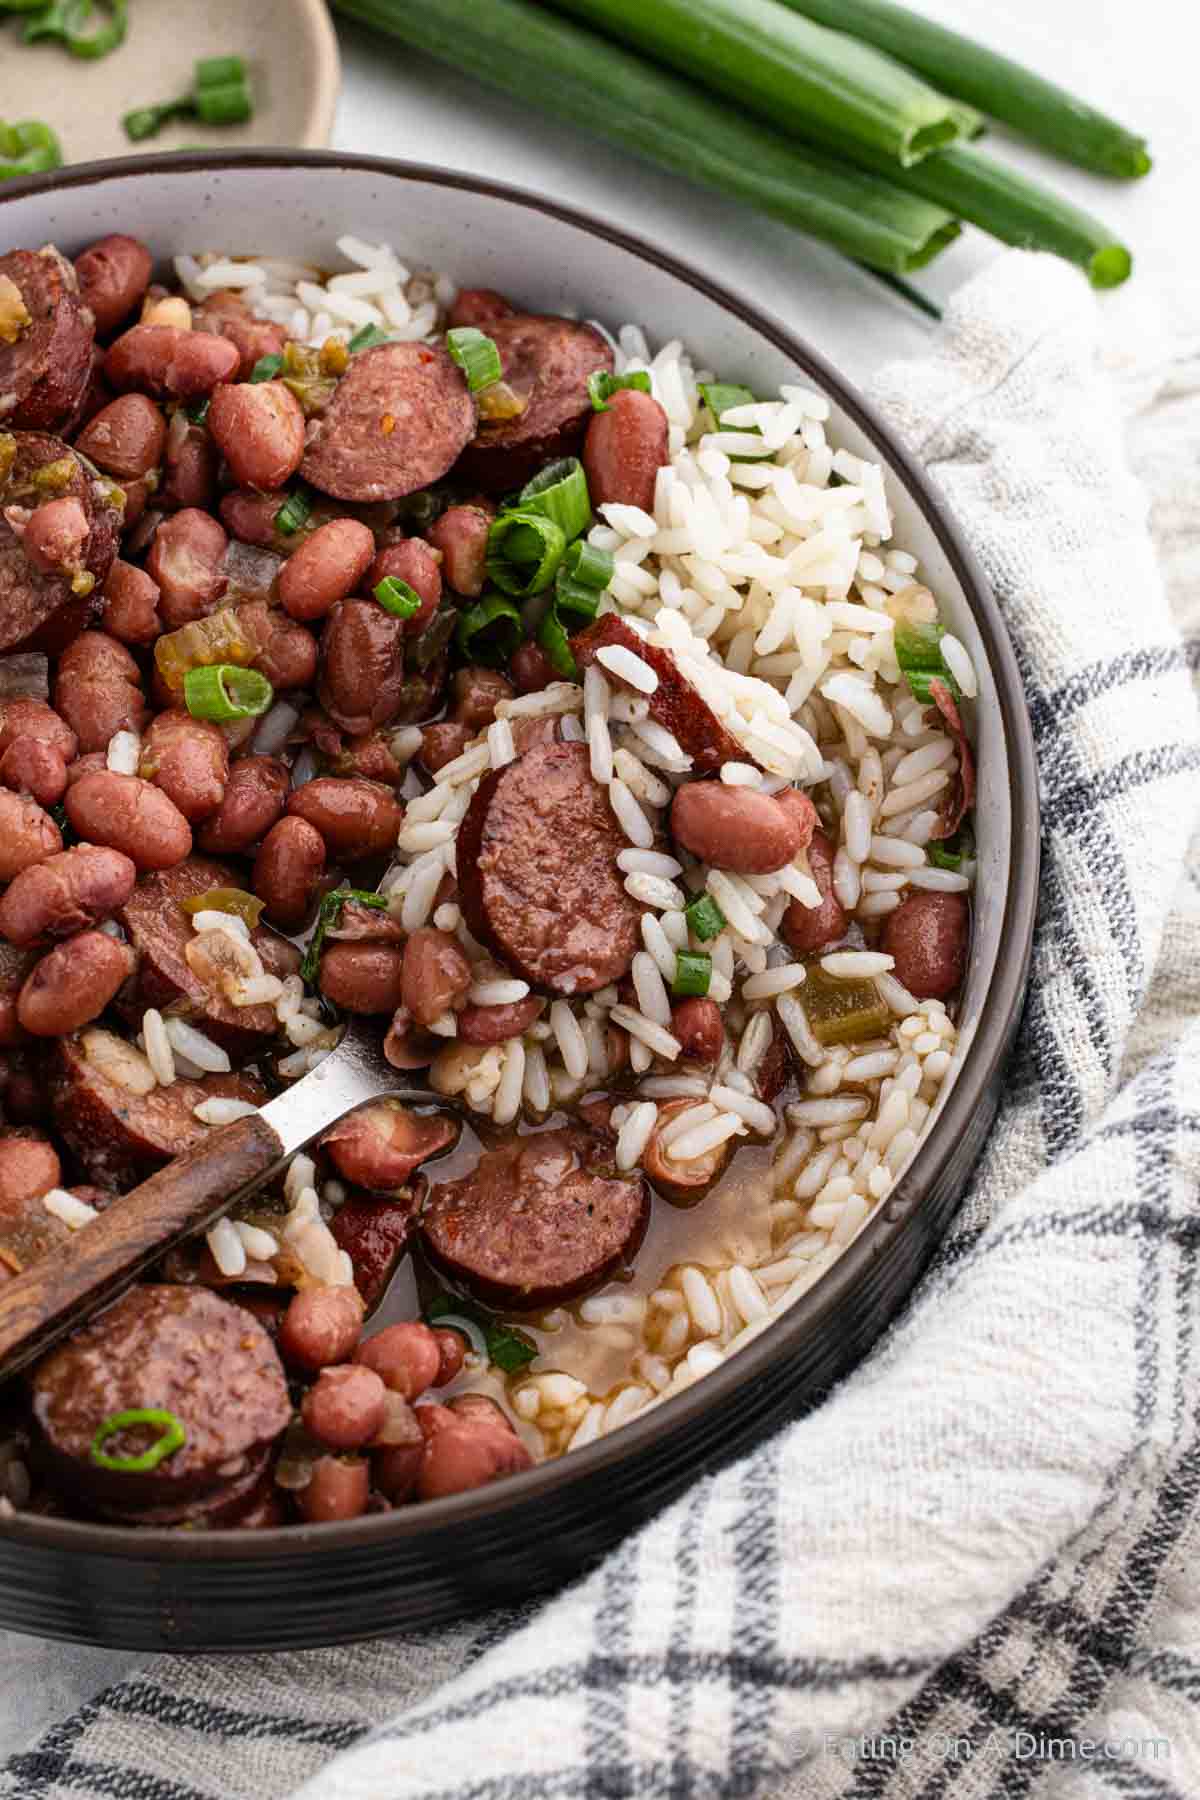 https://www.eatingonadime.com/wp-content/uploads/2019/09/200KB-Slow-Cooker-Red-Beans-and-Rice-8.jpg